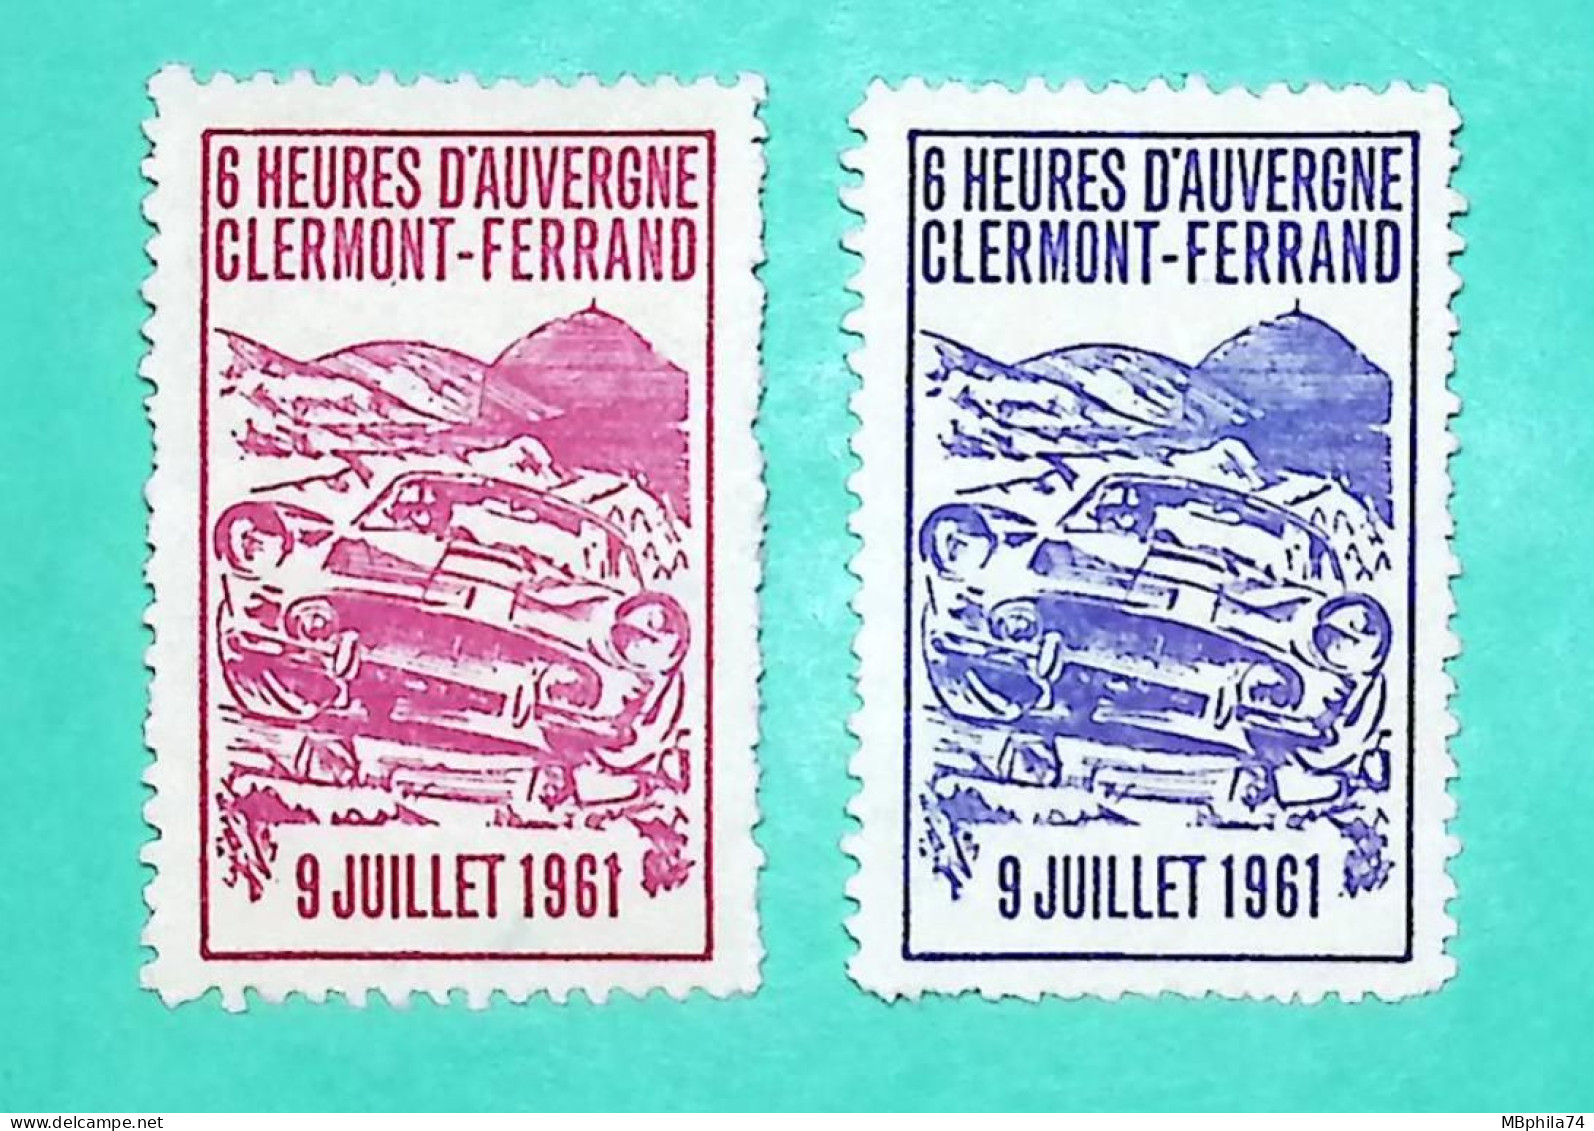 LOT VIGNETTES SPORT AUTOMOBILE 6 HEURES D'AUVERGNE CLERMONT FERRAND 9 JUILLET 1961 BLEU ET ROUGE ERINNOPHILIE - Sport